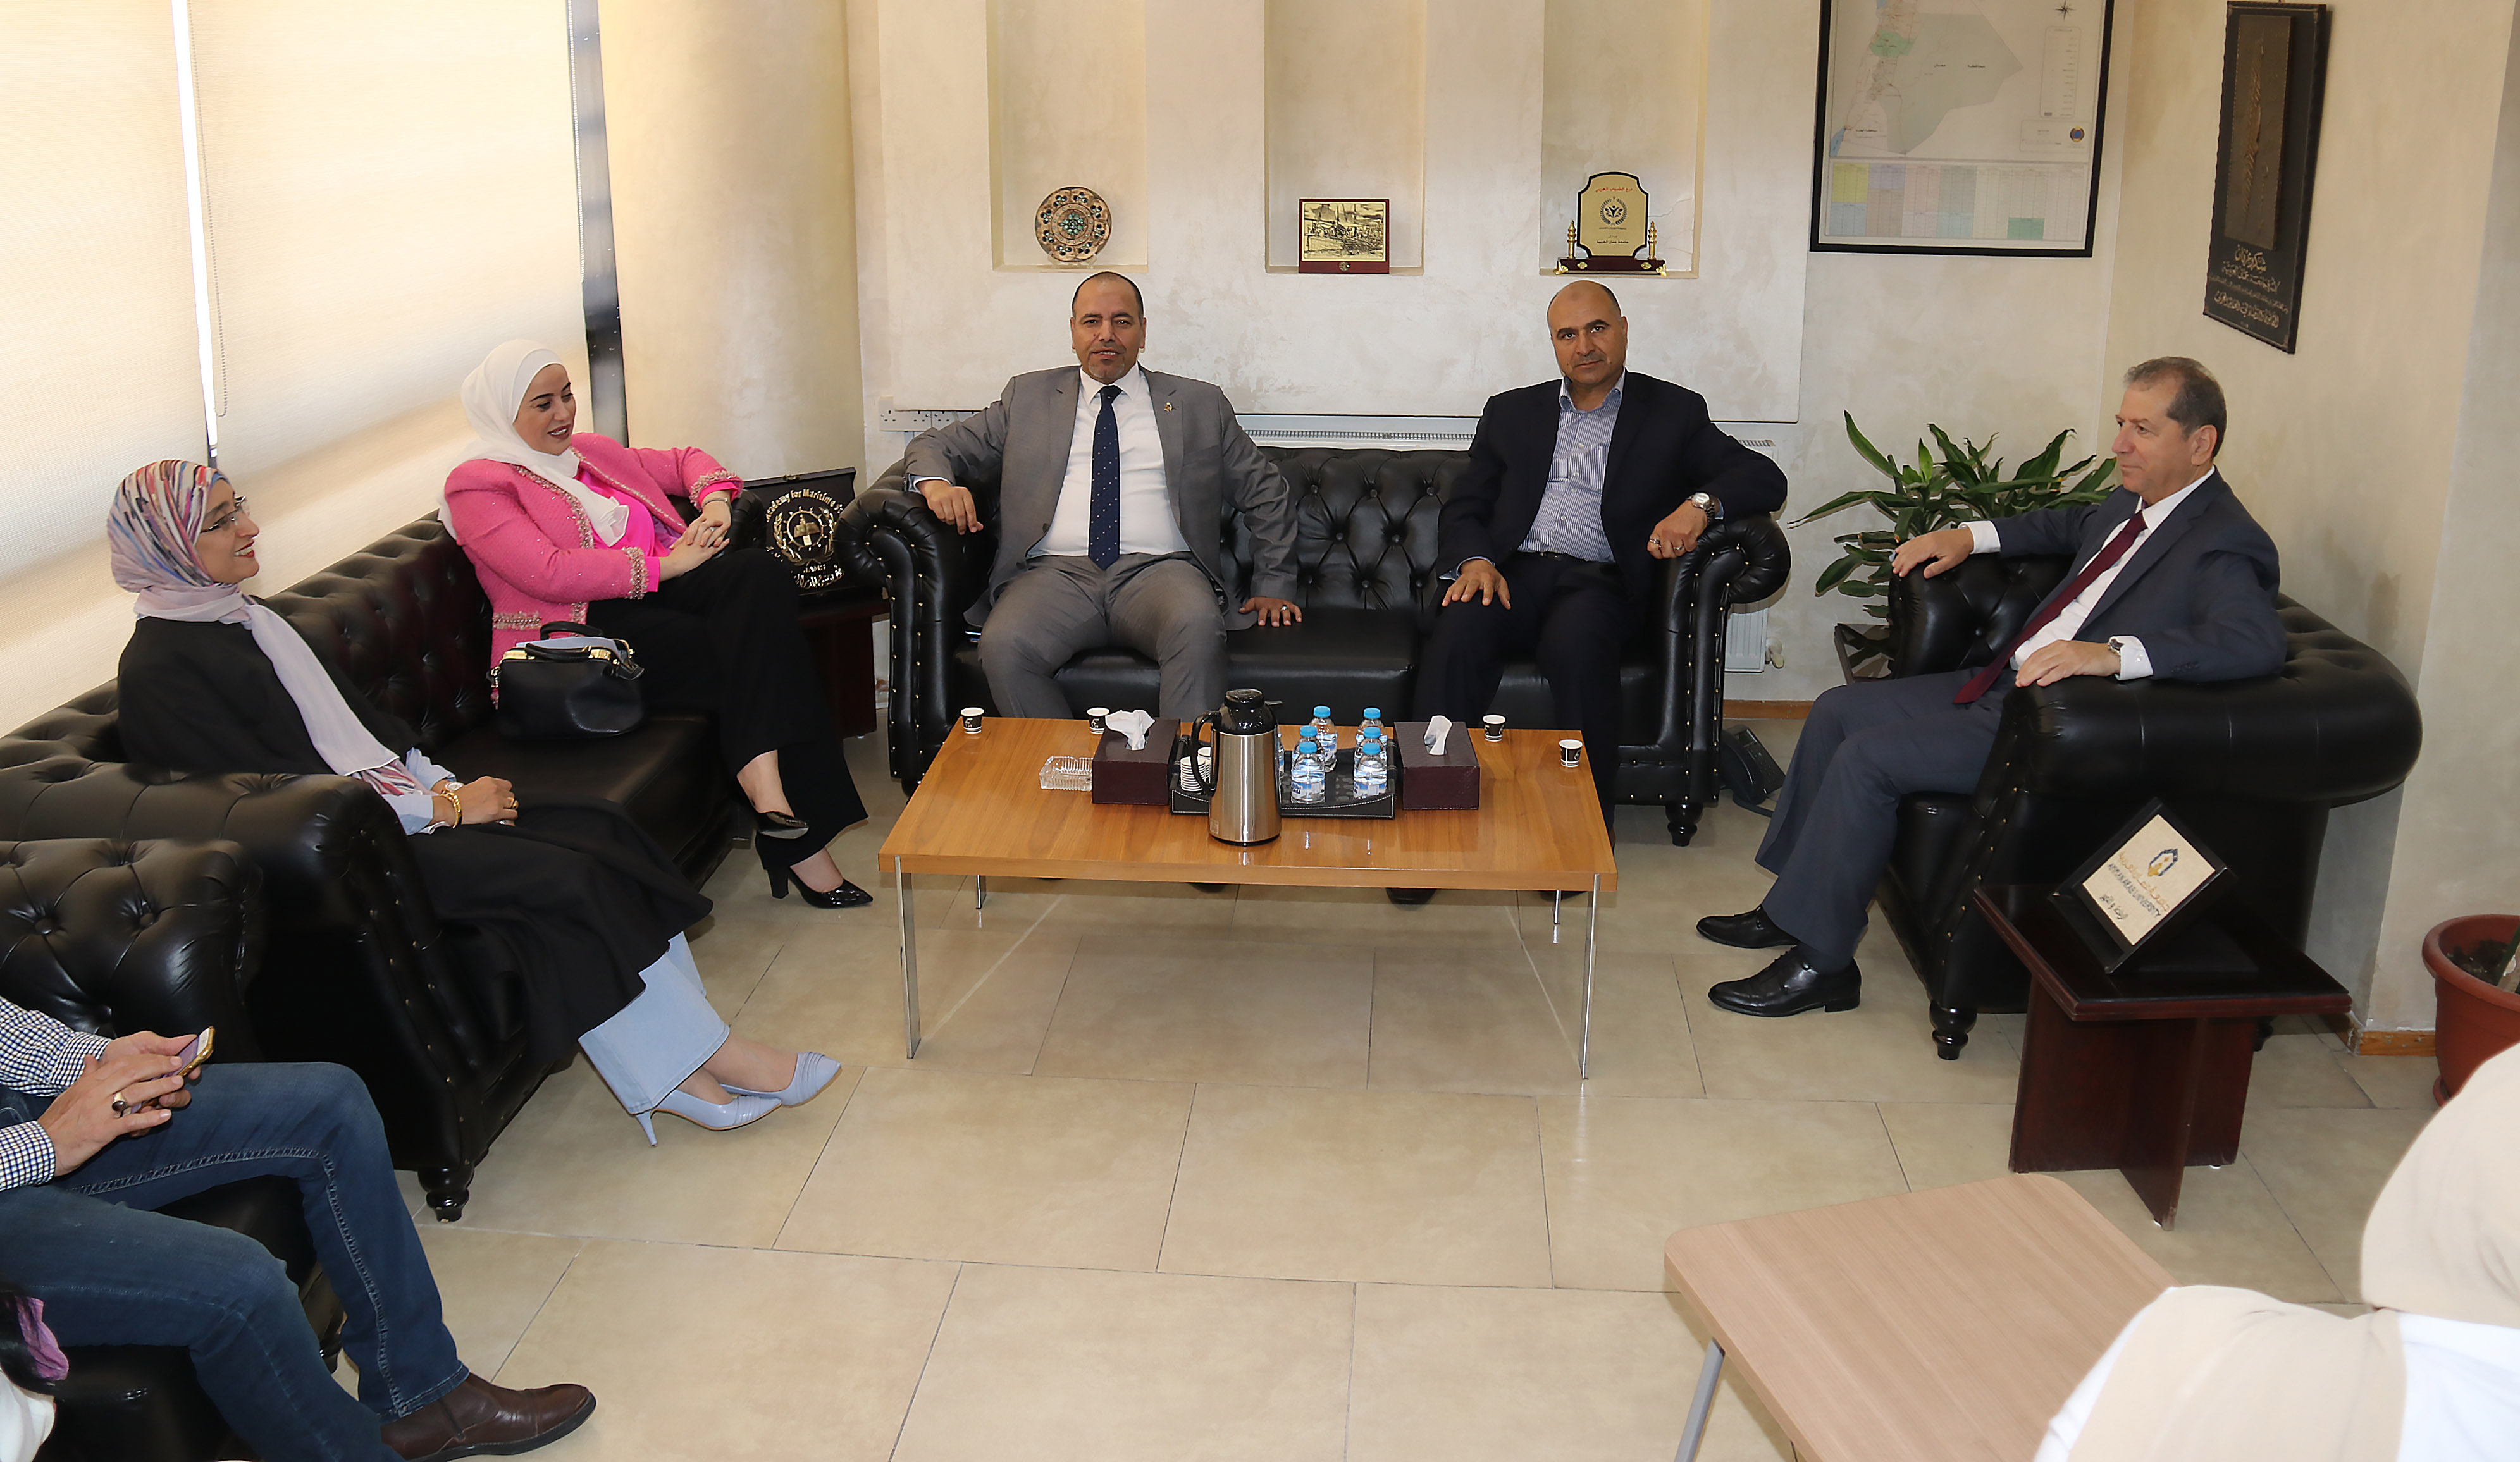 ندوة "التمكين السياسي والقيادي للمرأة الأردنية" في عمان العربية1